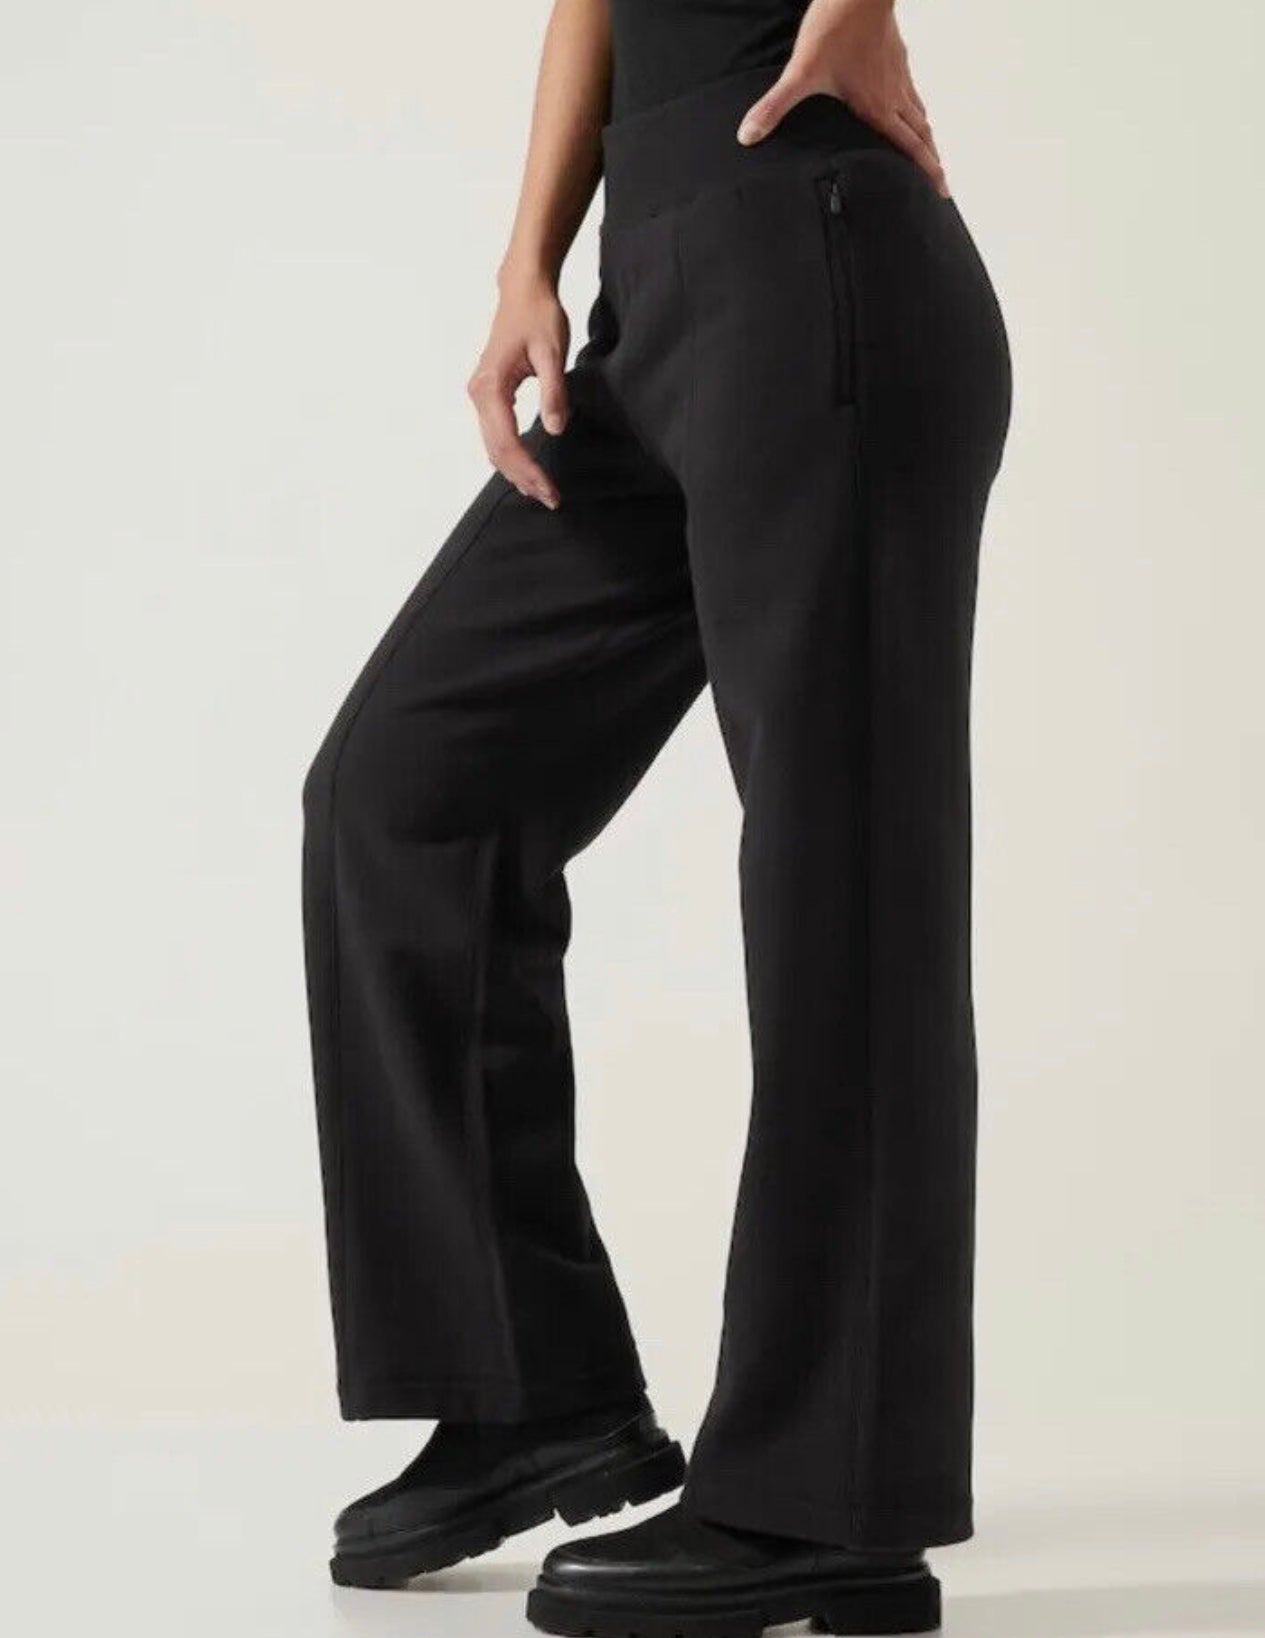 Buy Women's Black Trousers Online from Blissclub